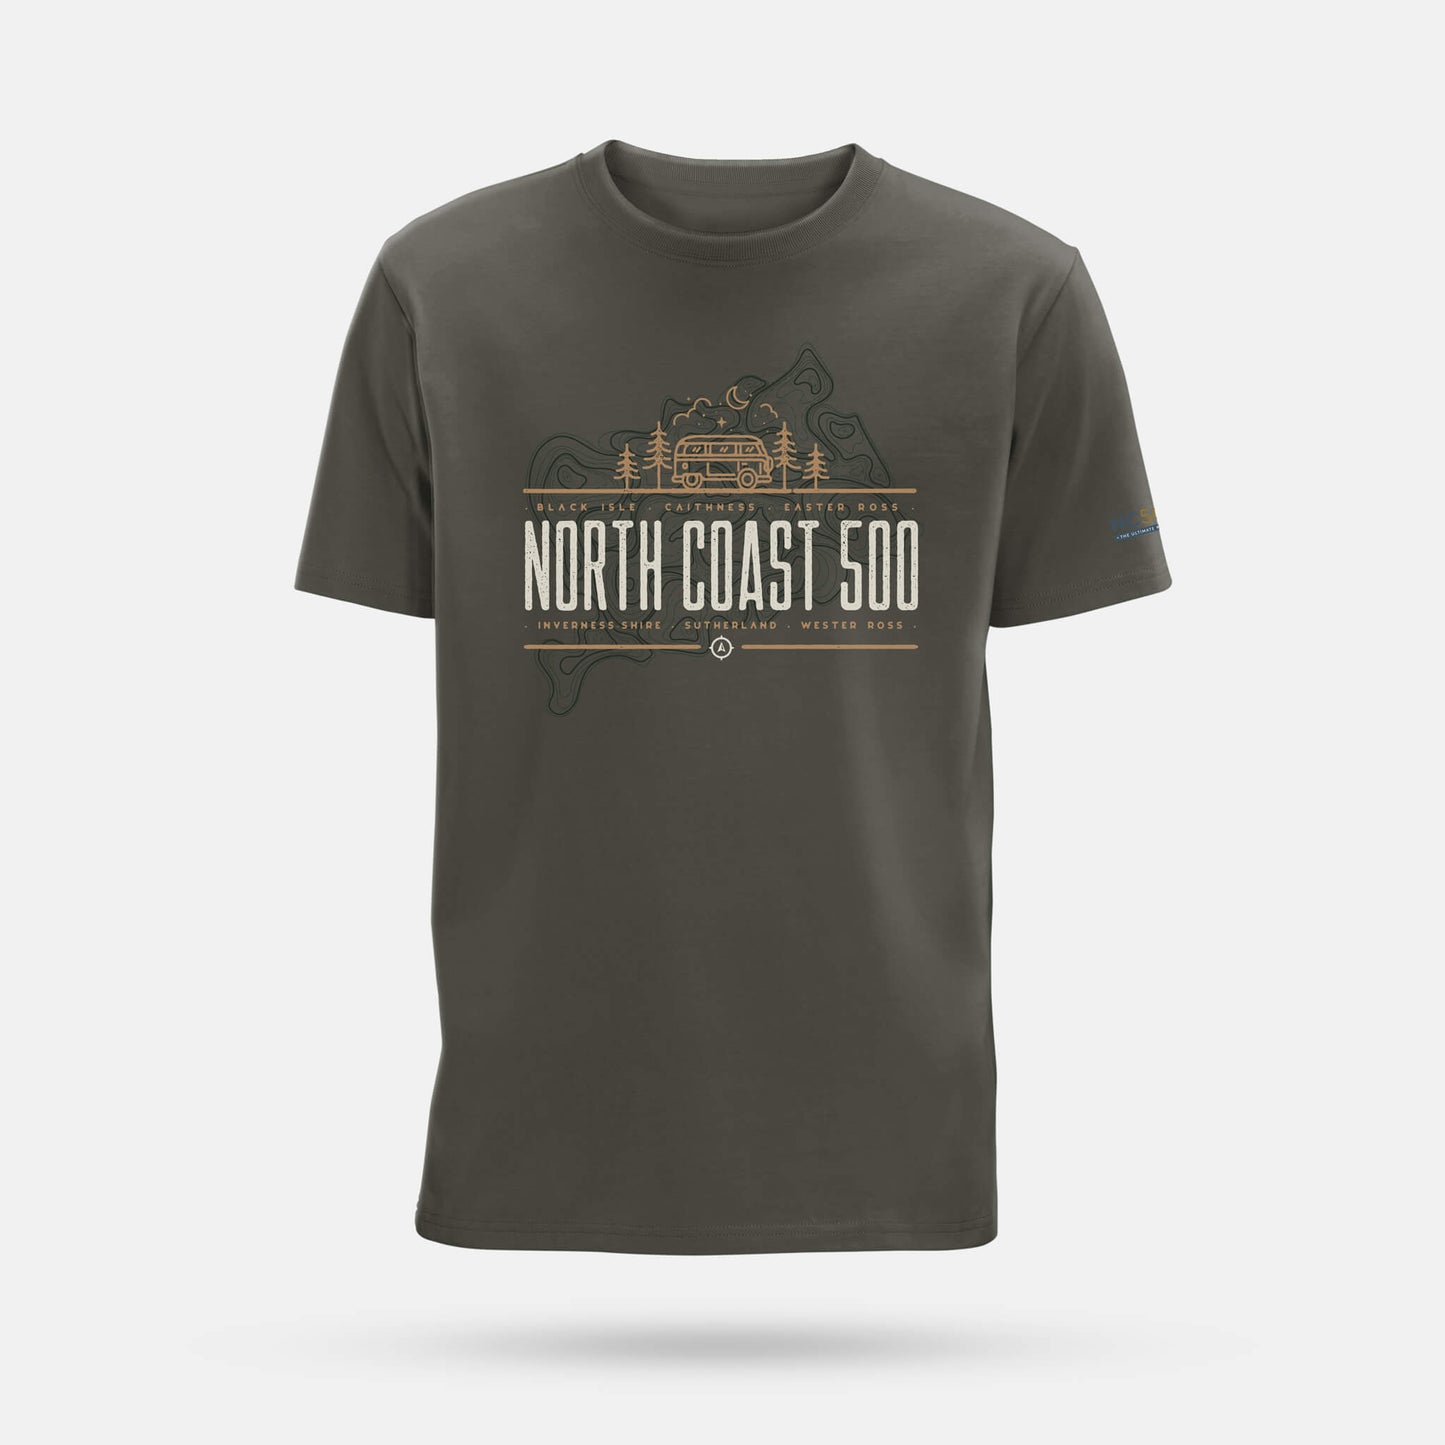 North Coast 500 camper t-shirt - Khaki